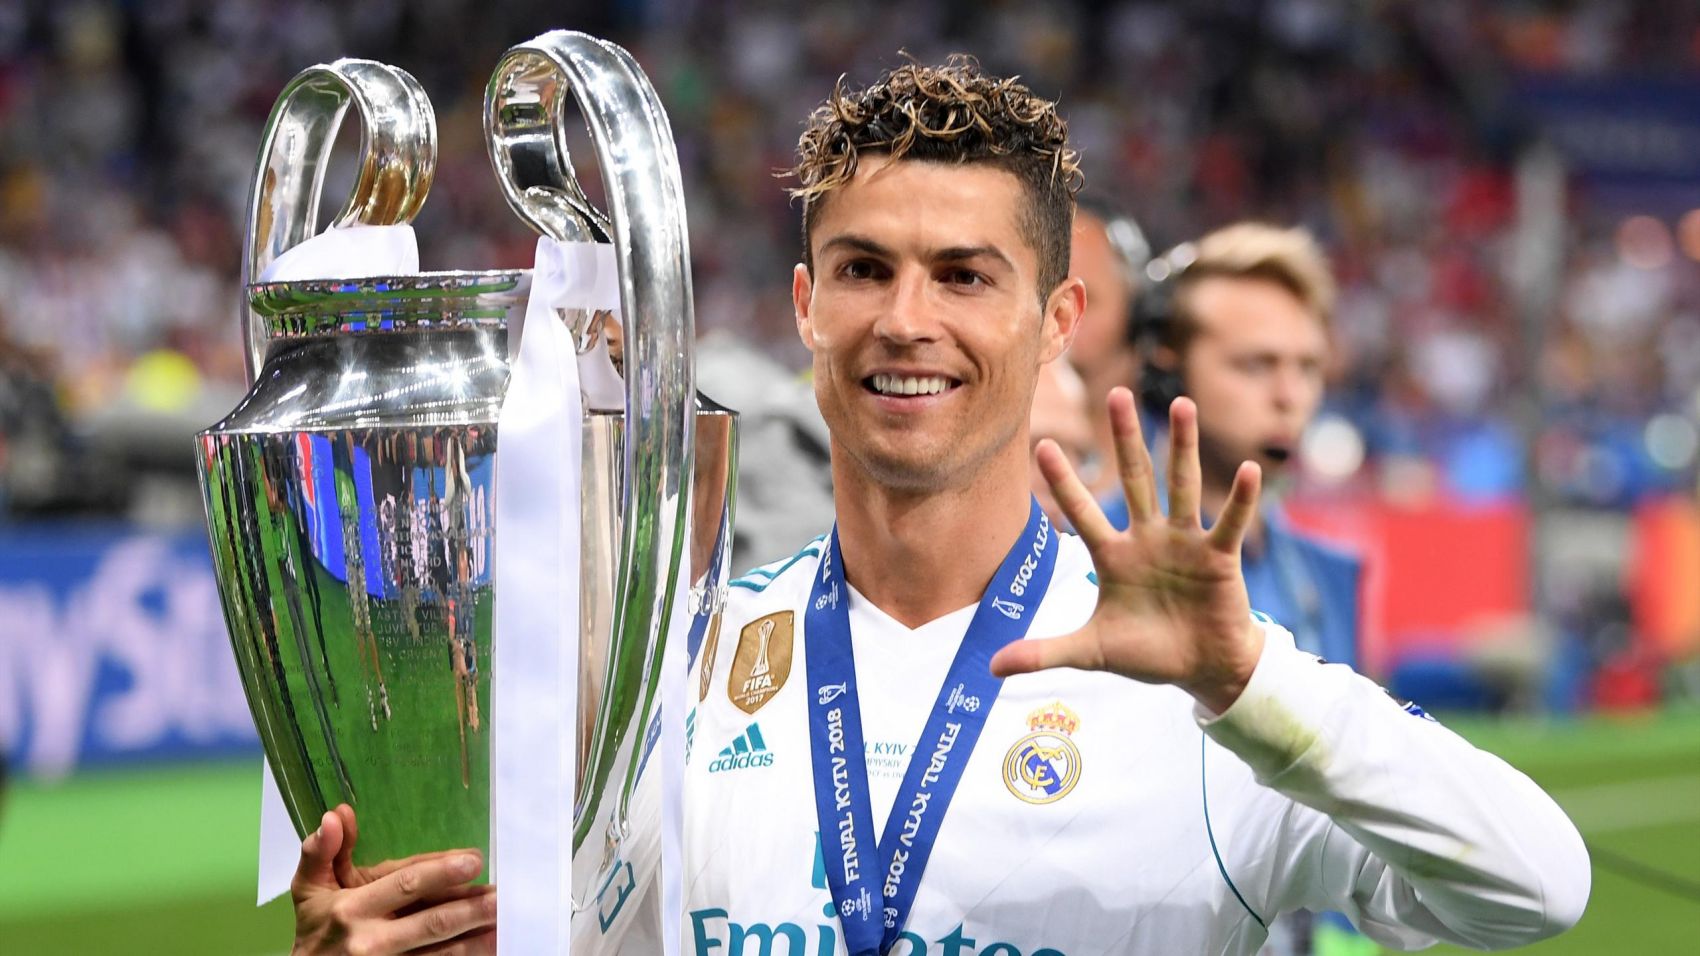 M.U và Cristiano Ronaldo là hai cái tên đã trở thành huyền thoại của bóng đá thế giới. Hình ảnh của họ khiến người hâm mộ vô cùng phấn khích vì đã ngự trị được một thời đại bóng đá.